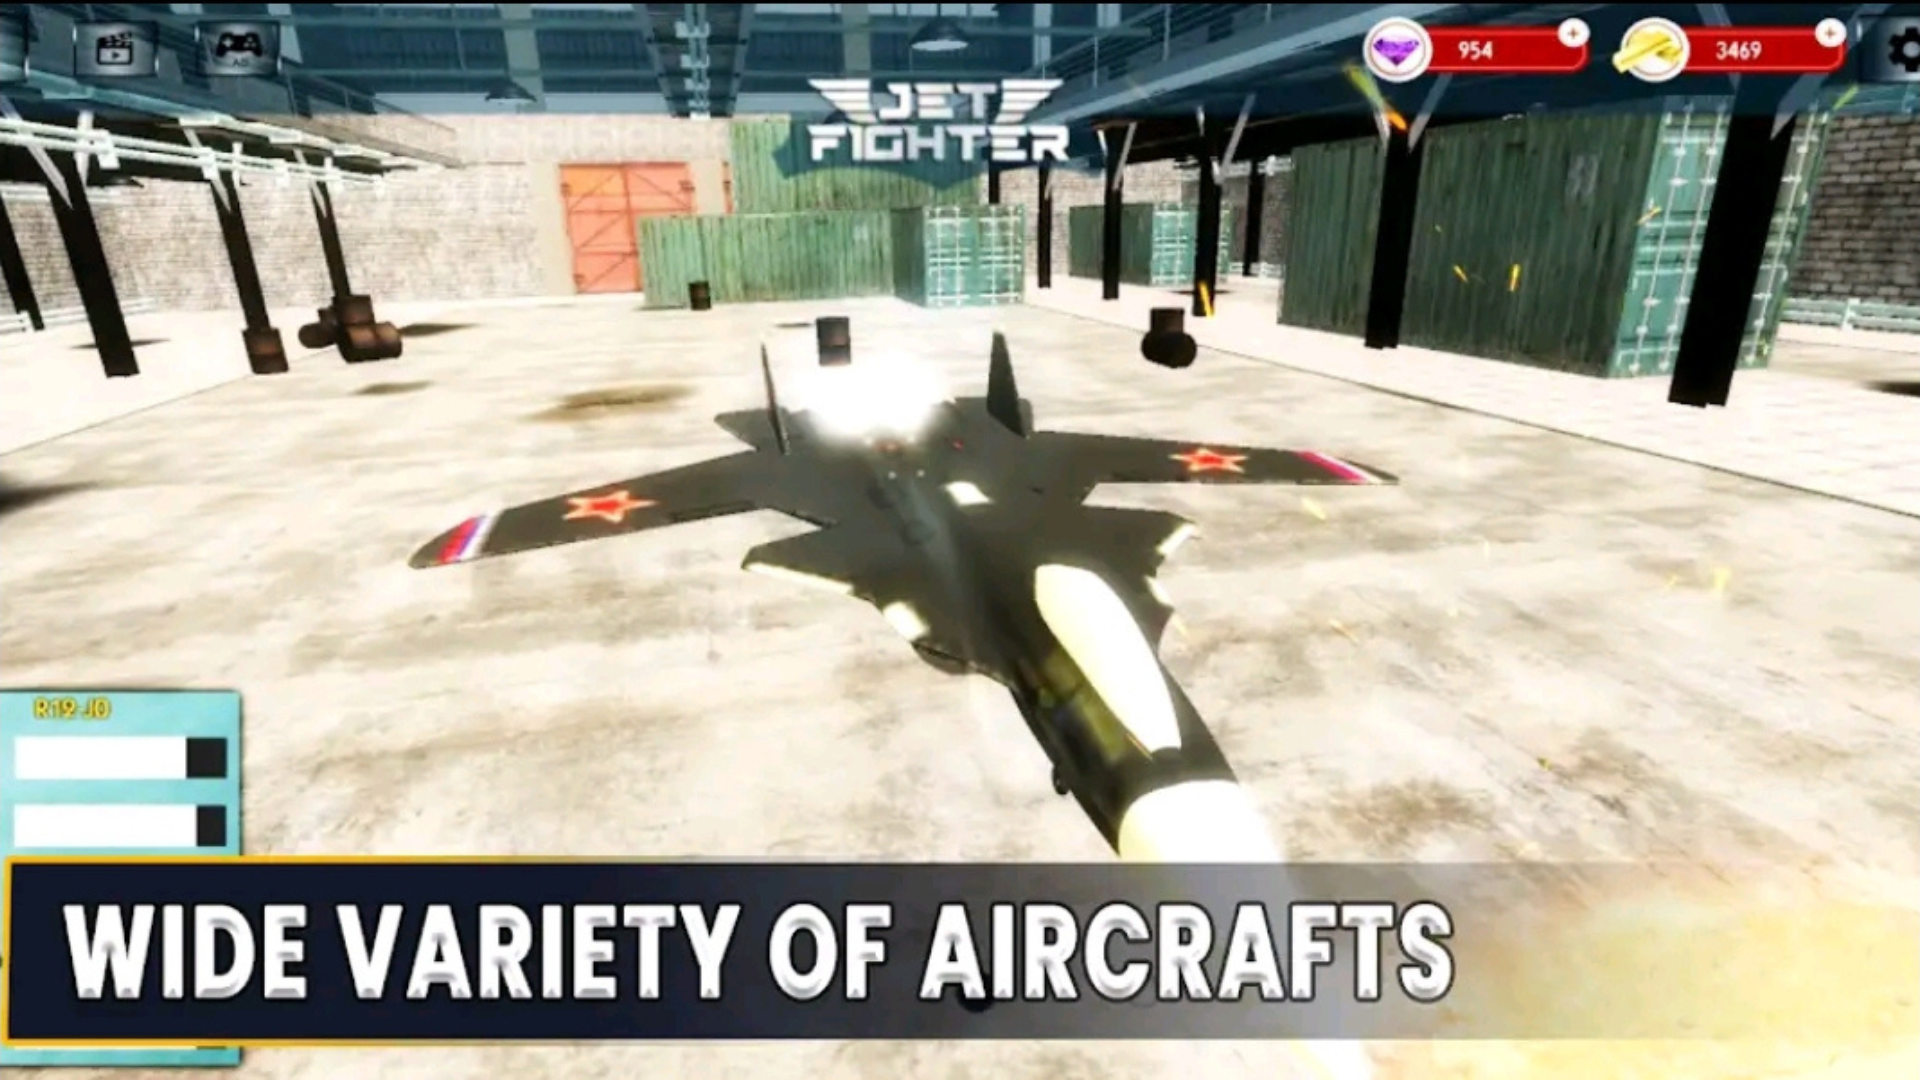 Download do APK de Avião de guerra a jato combate para Android